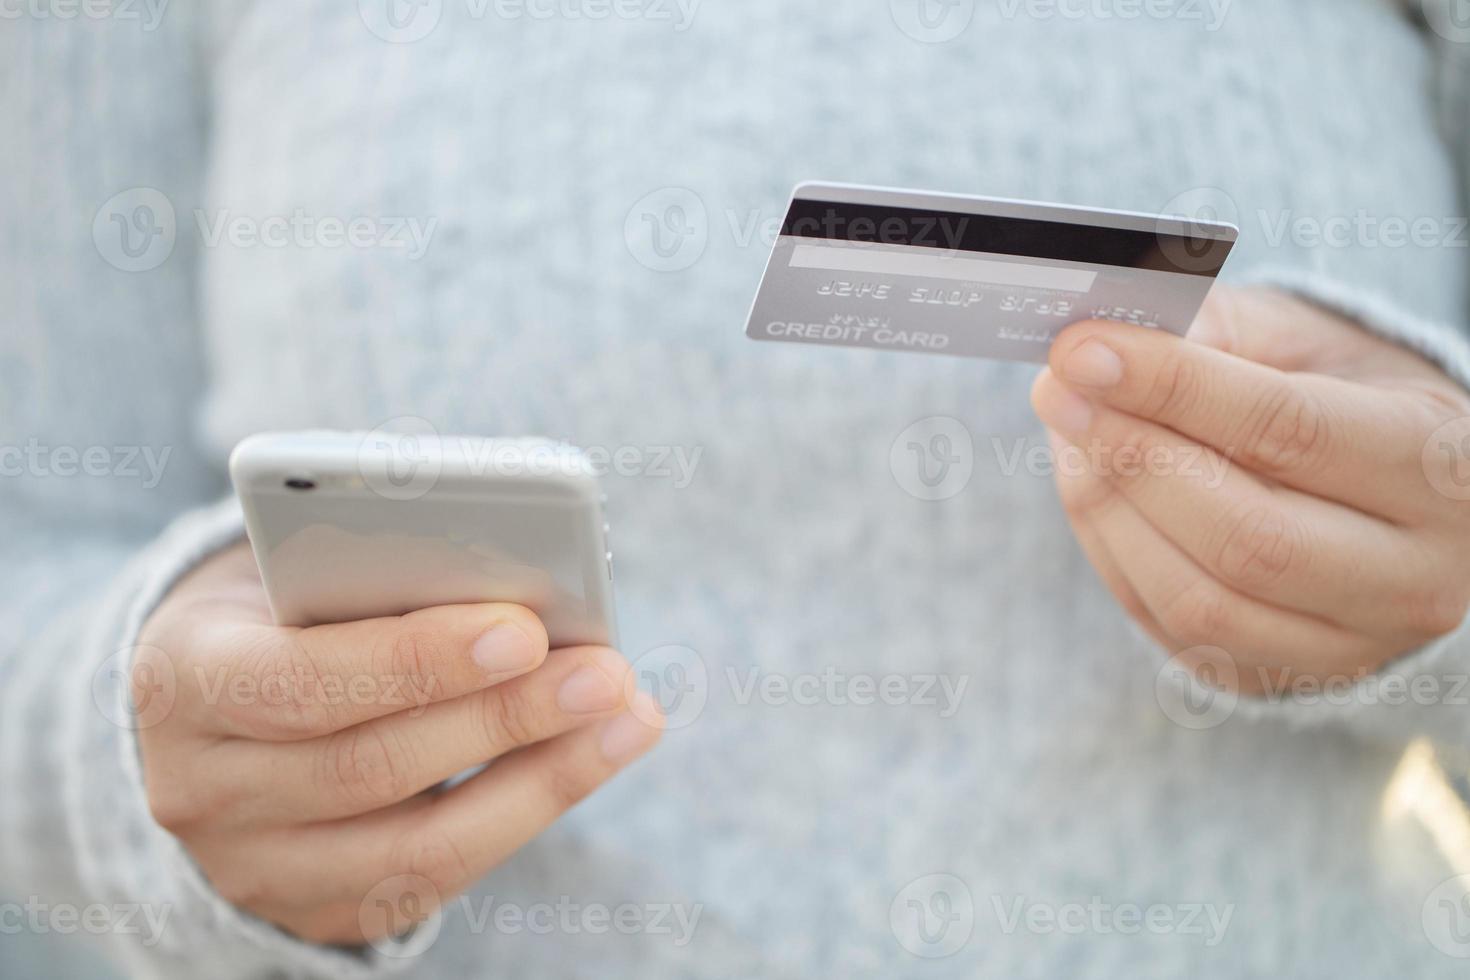 une femme utilisant une carte de crédit pour payer des marchandises en ligne avec un téléphone mobile photo